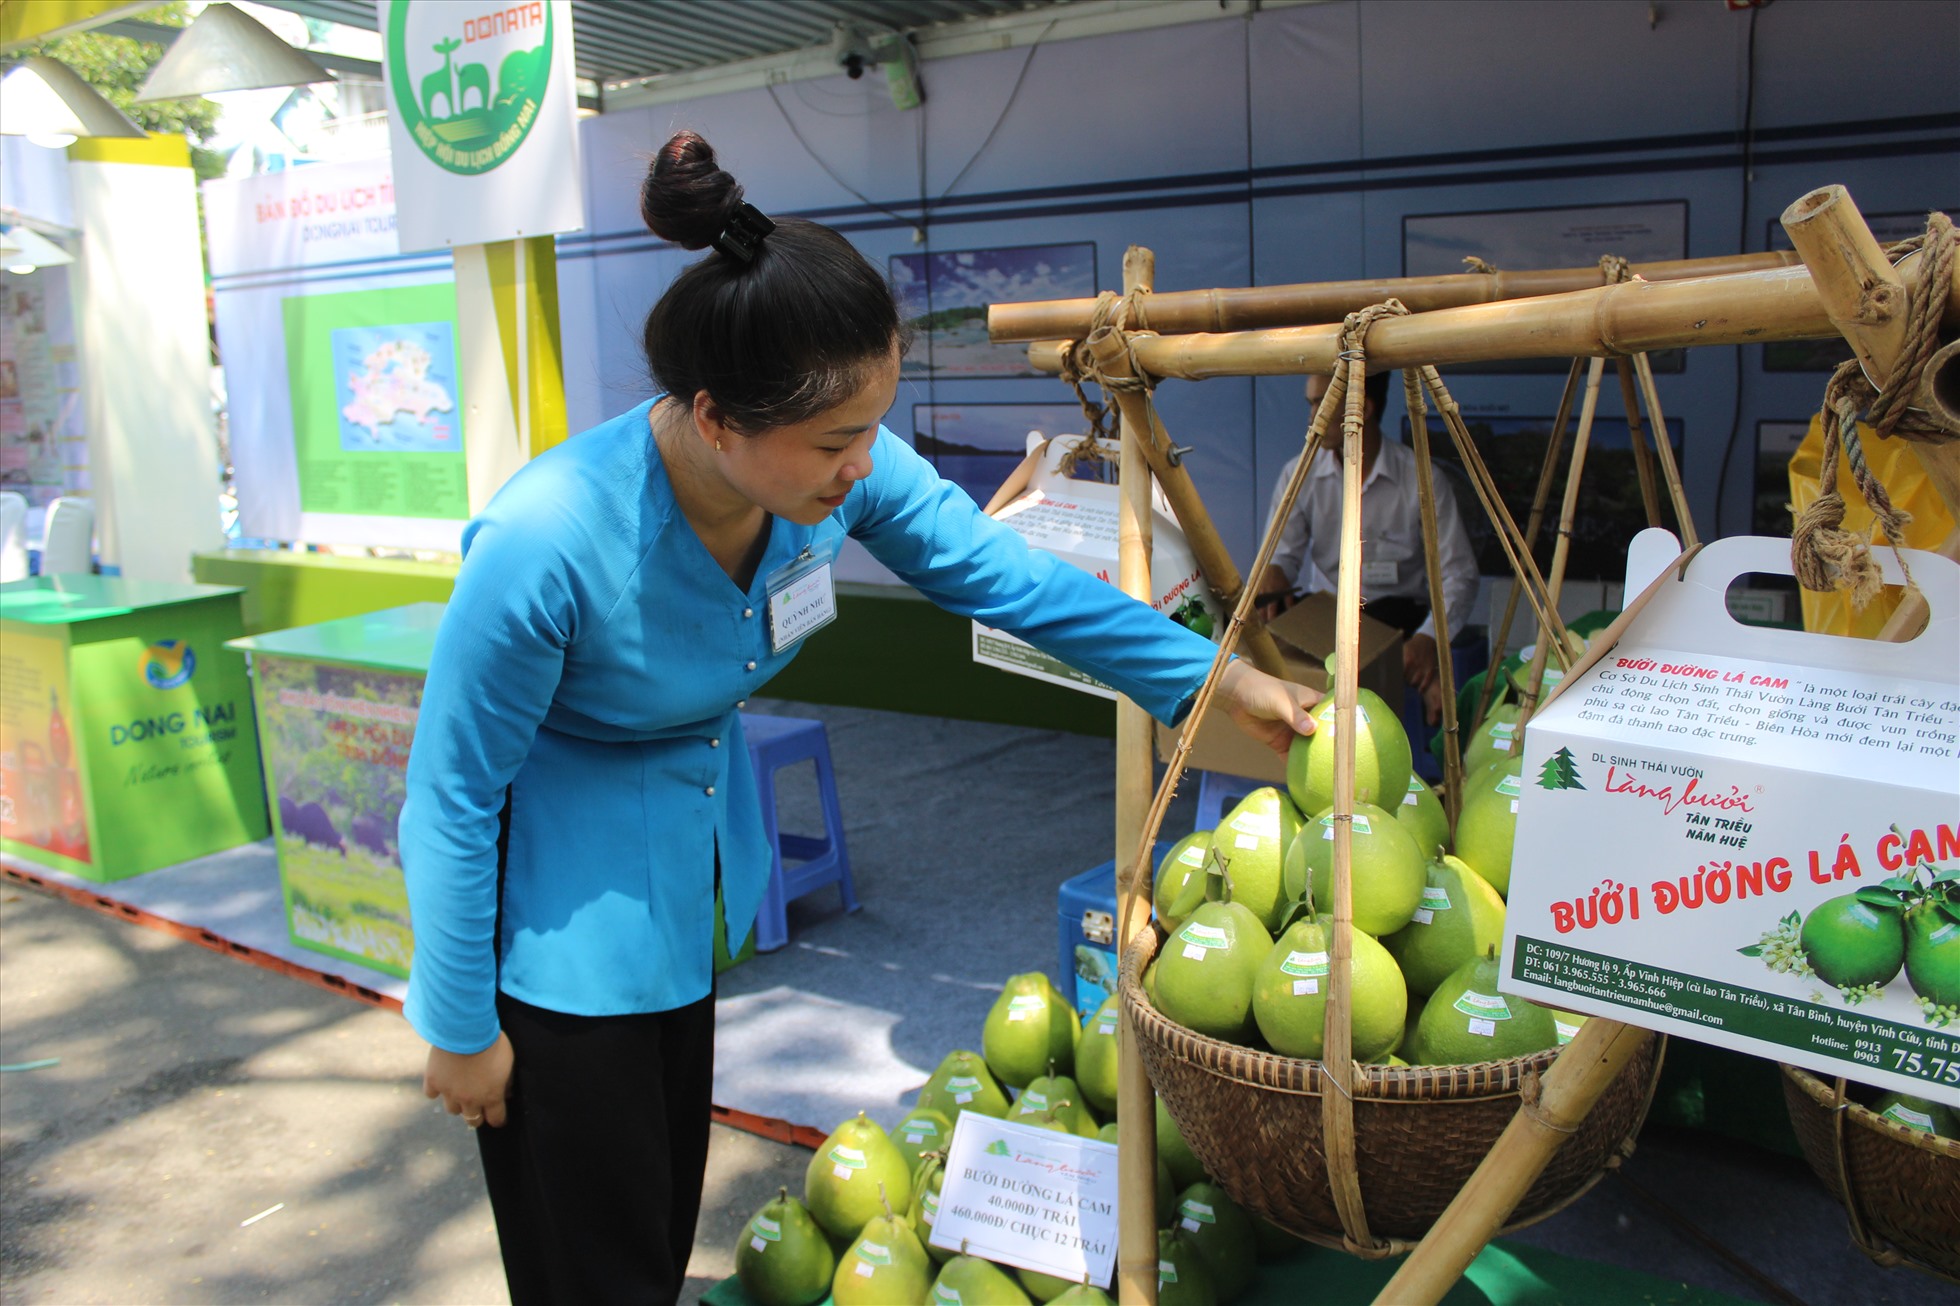 Chị Bạch Thị Quỳnh Như - nhân viên giới thiệu du lịch tại Đồng Nai cho biết, những trái bưởi được bày bán ở đây đều được mang trực tiếp từ vườn trồng. Theo lời chia sẻ của chị Như, du khách khi đến tham quan tại Đồng Nai sẽ được trải nghiệm tham quan vườn bưởi miễn phí.